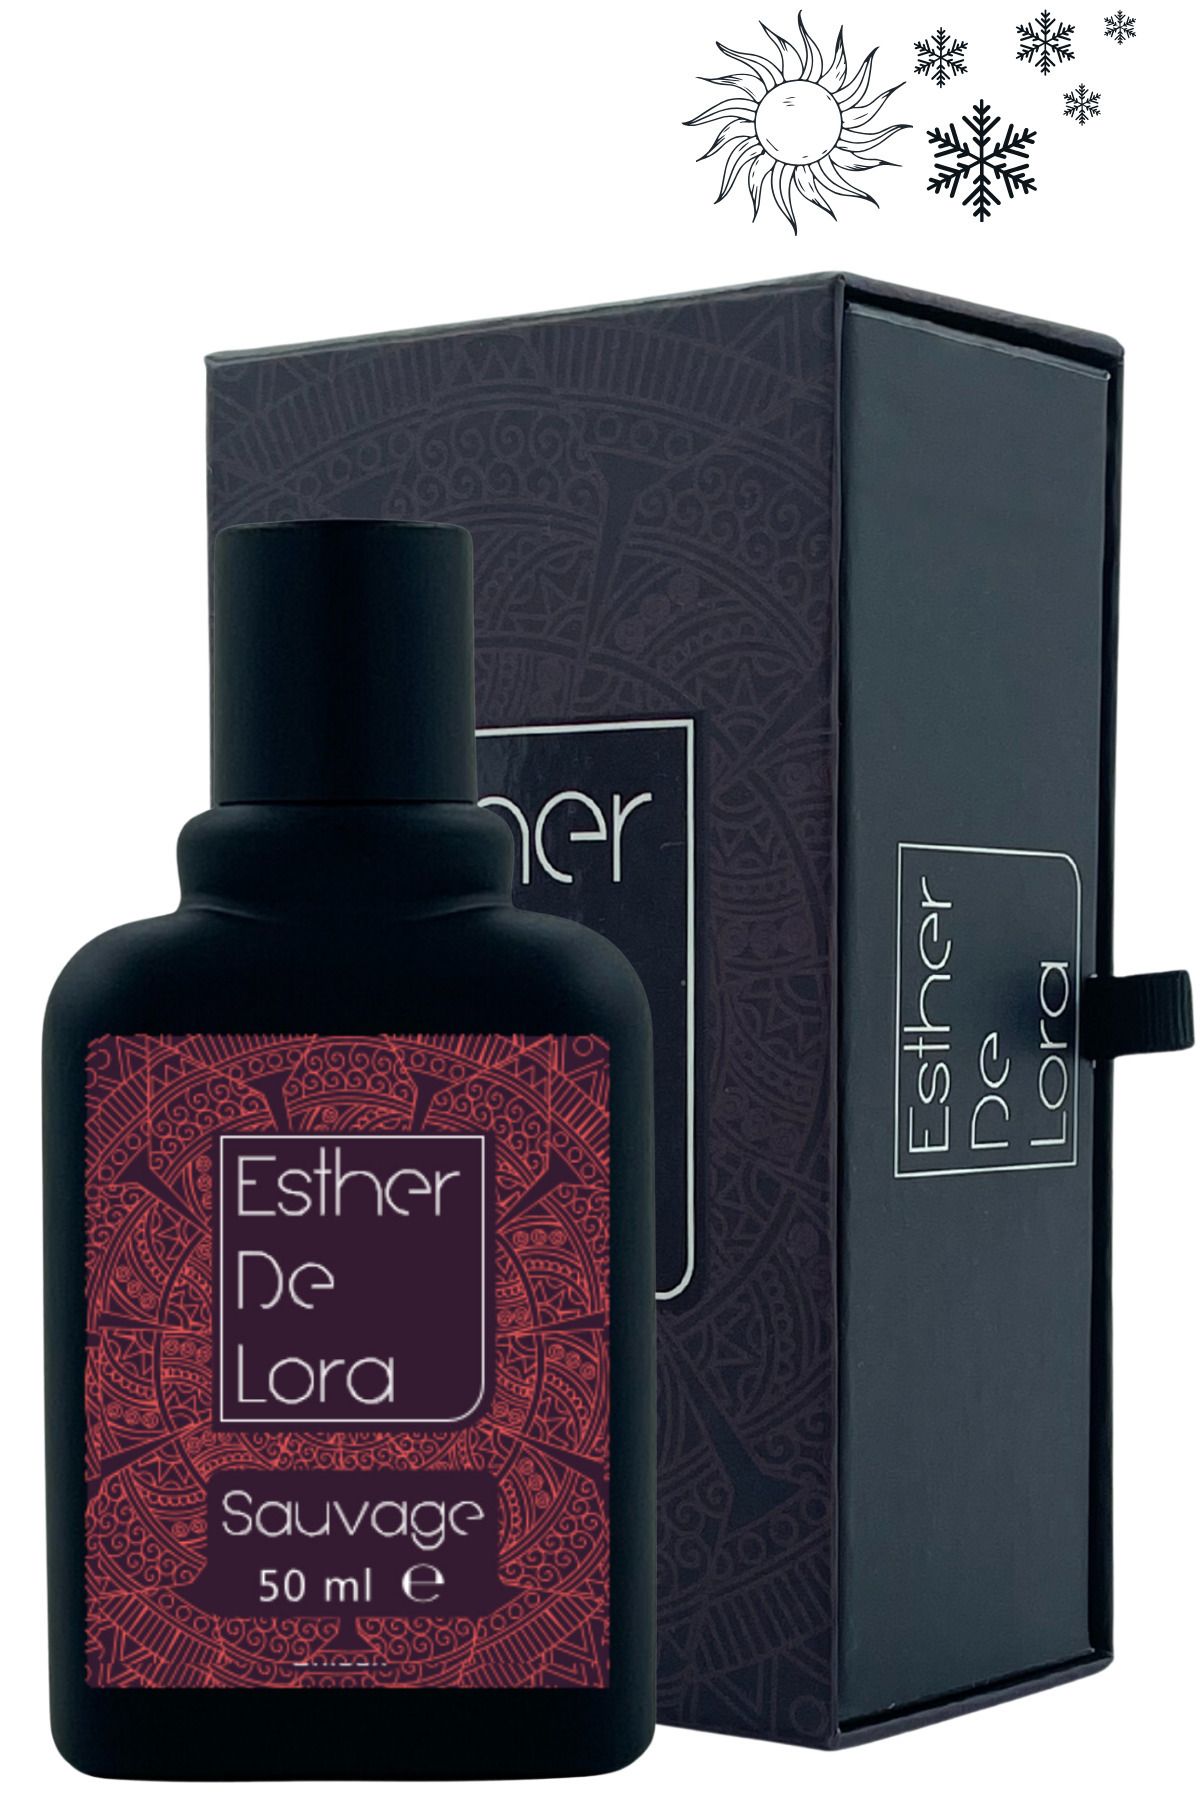 Esther De Lora Sauvage %40 Esans Kalıcı Erkek Parfum Dior Edp Hediye Yılbaşı Premium Kutu Afrodizyak 50ml